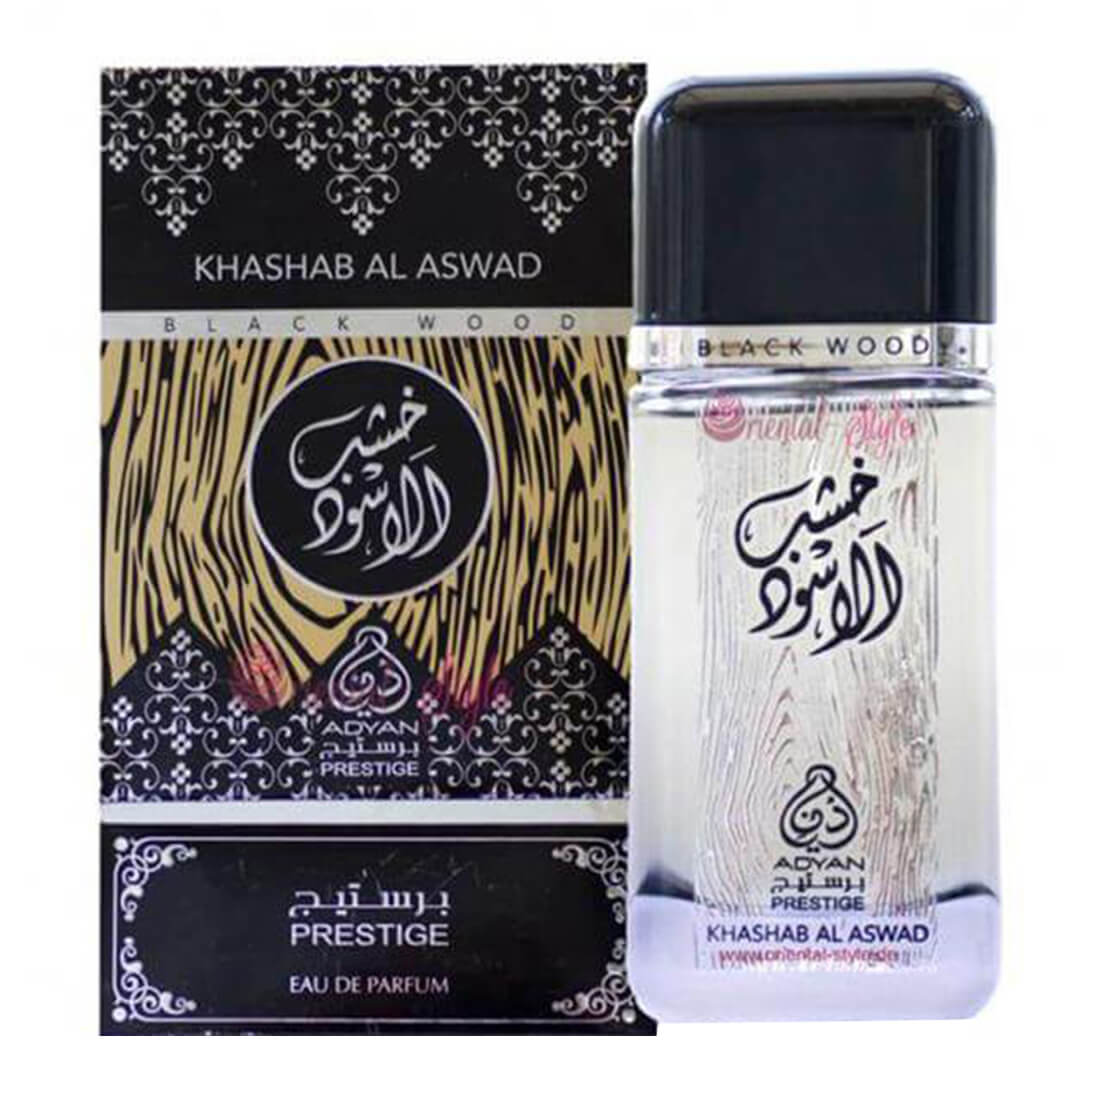 Adyan Khashab Al Aswad Black Wood Perfume Spray - 100ml